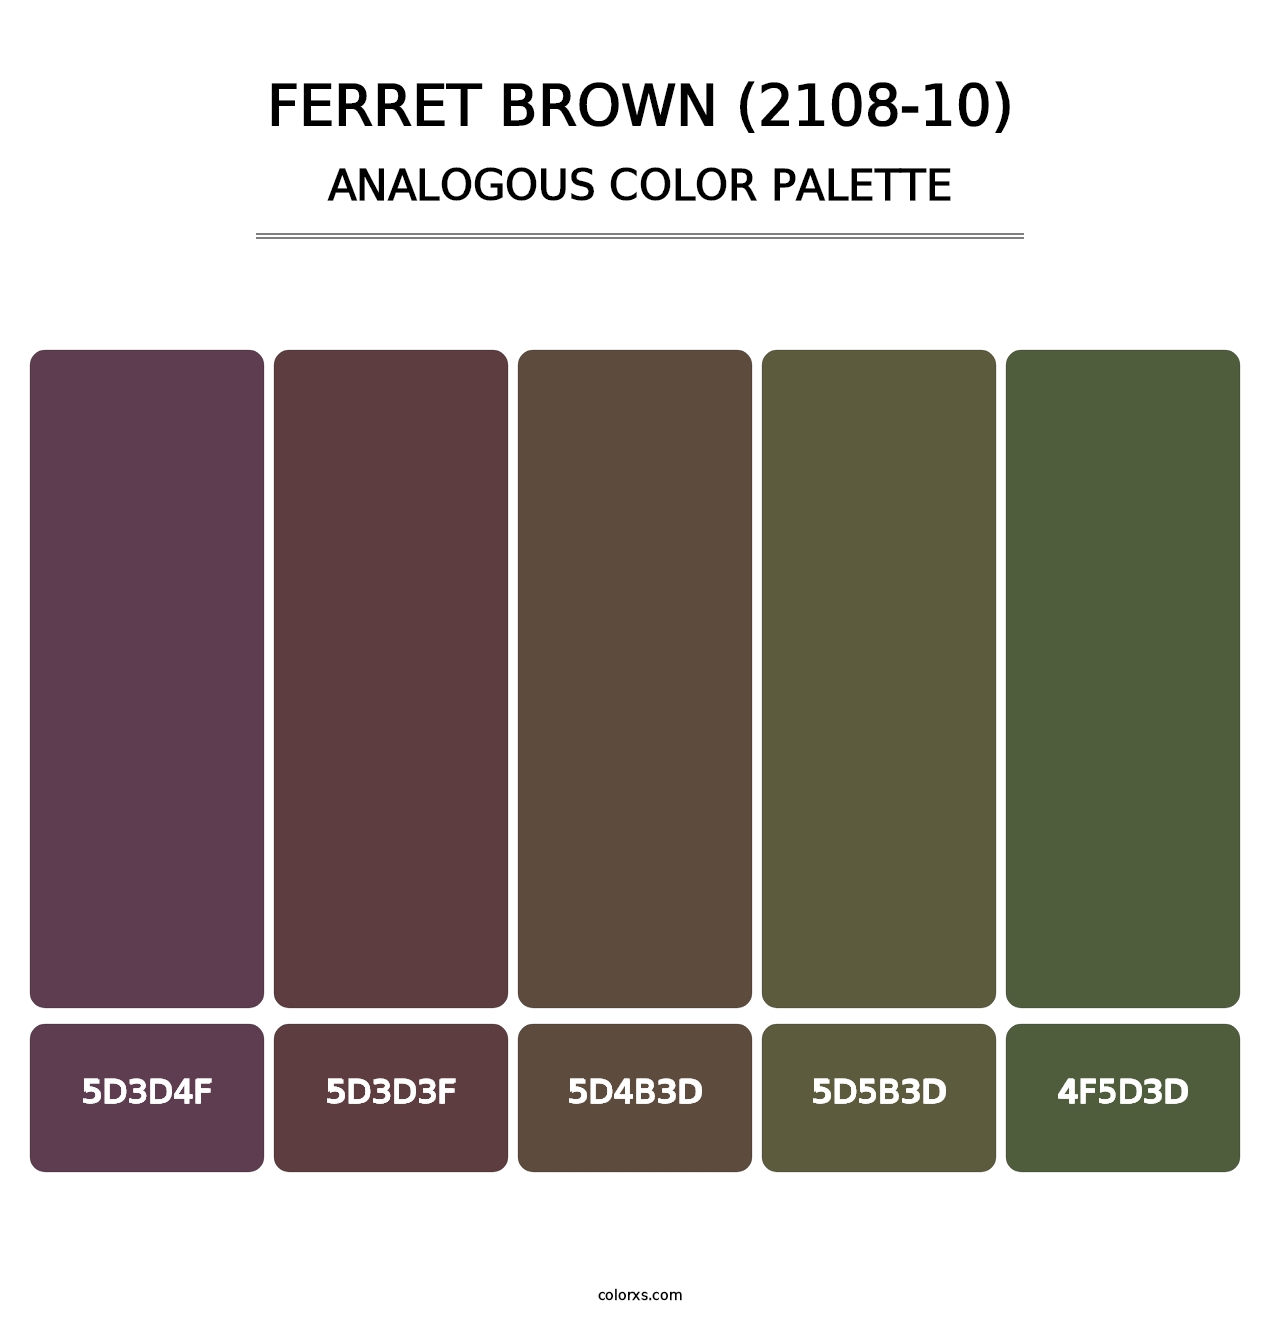 Ferret Brown (2108-10) - Analogous Color Palette